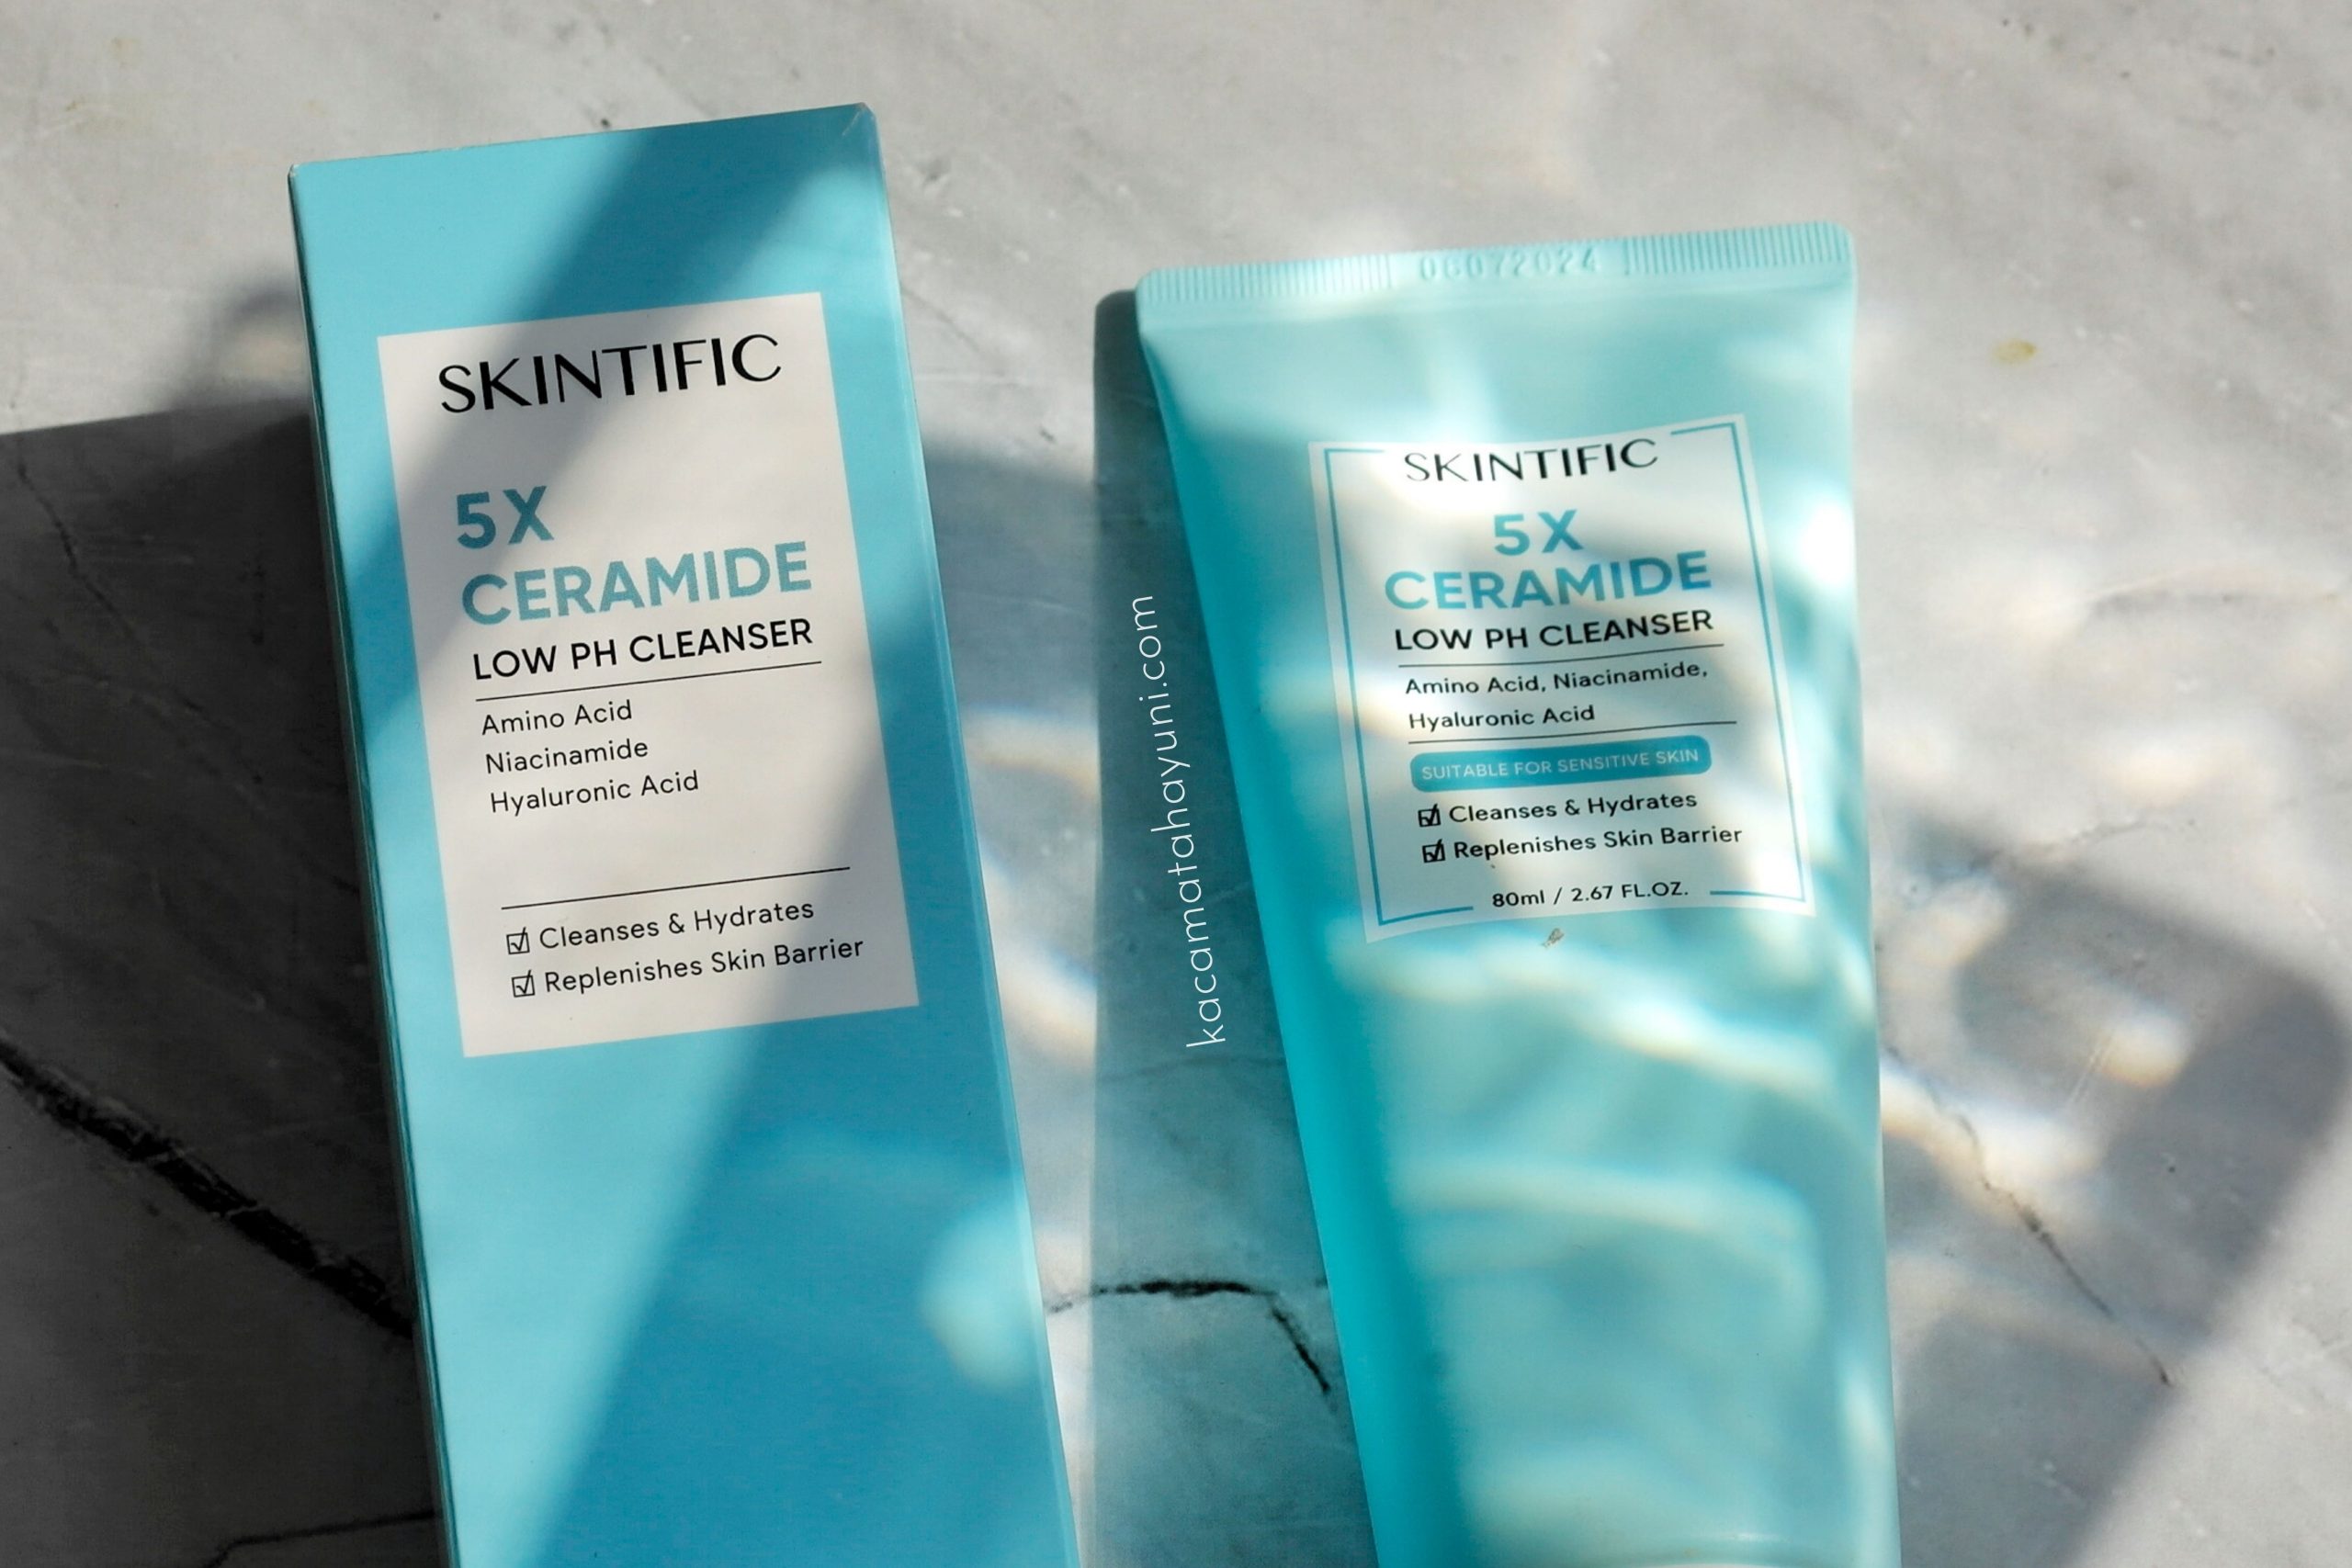 Mengatasi masalah kulit kusam, iritasi dan maskne dengan Skintific 5x Ceramide Low pH Cleanser